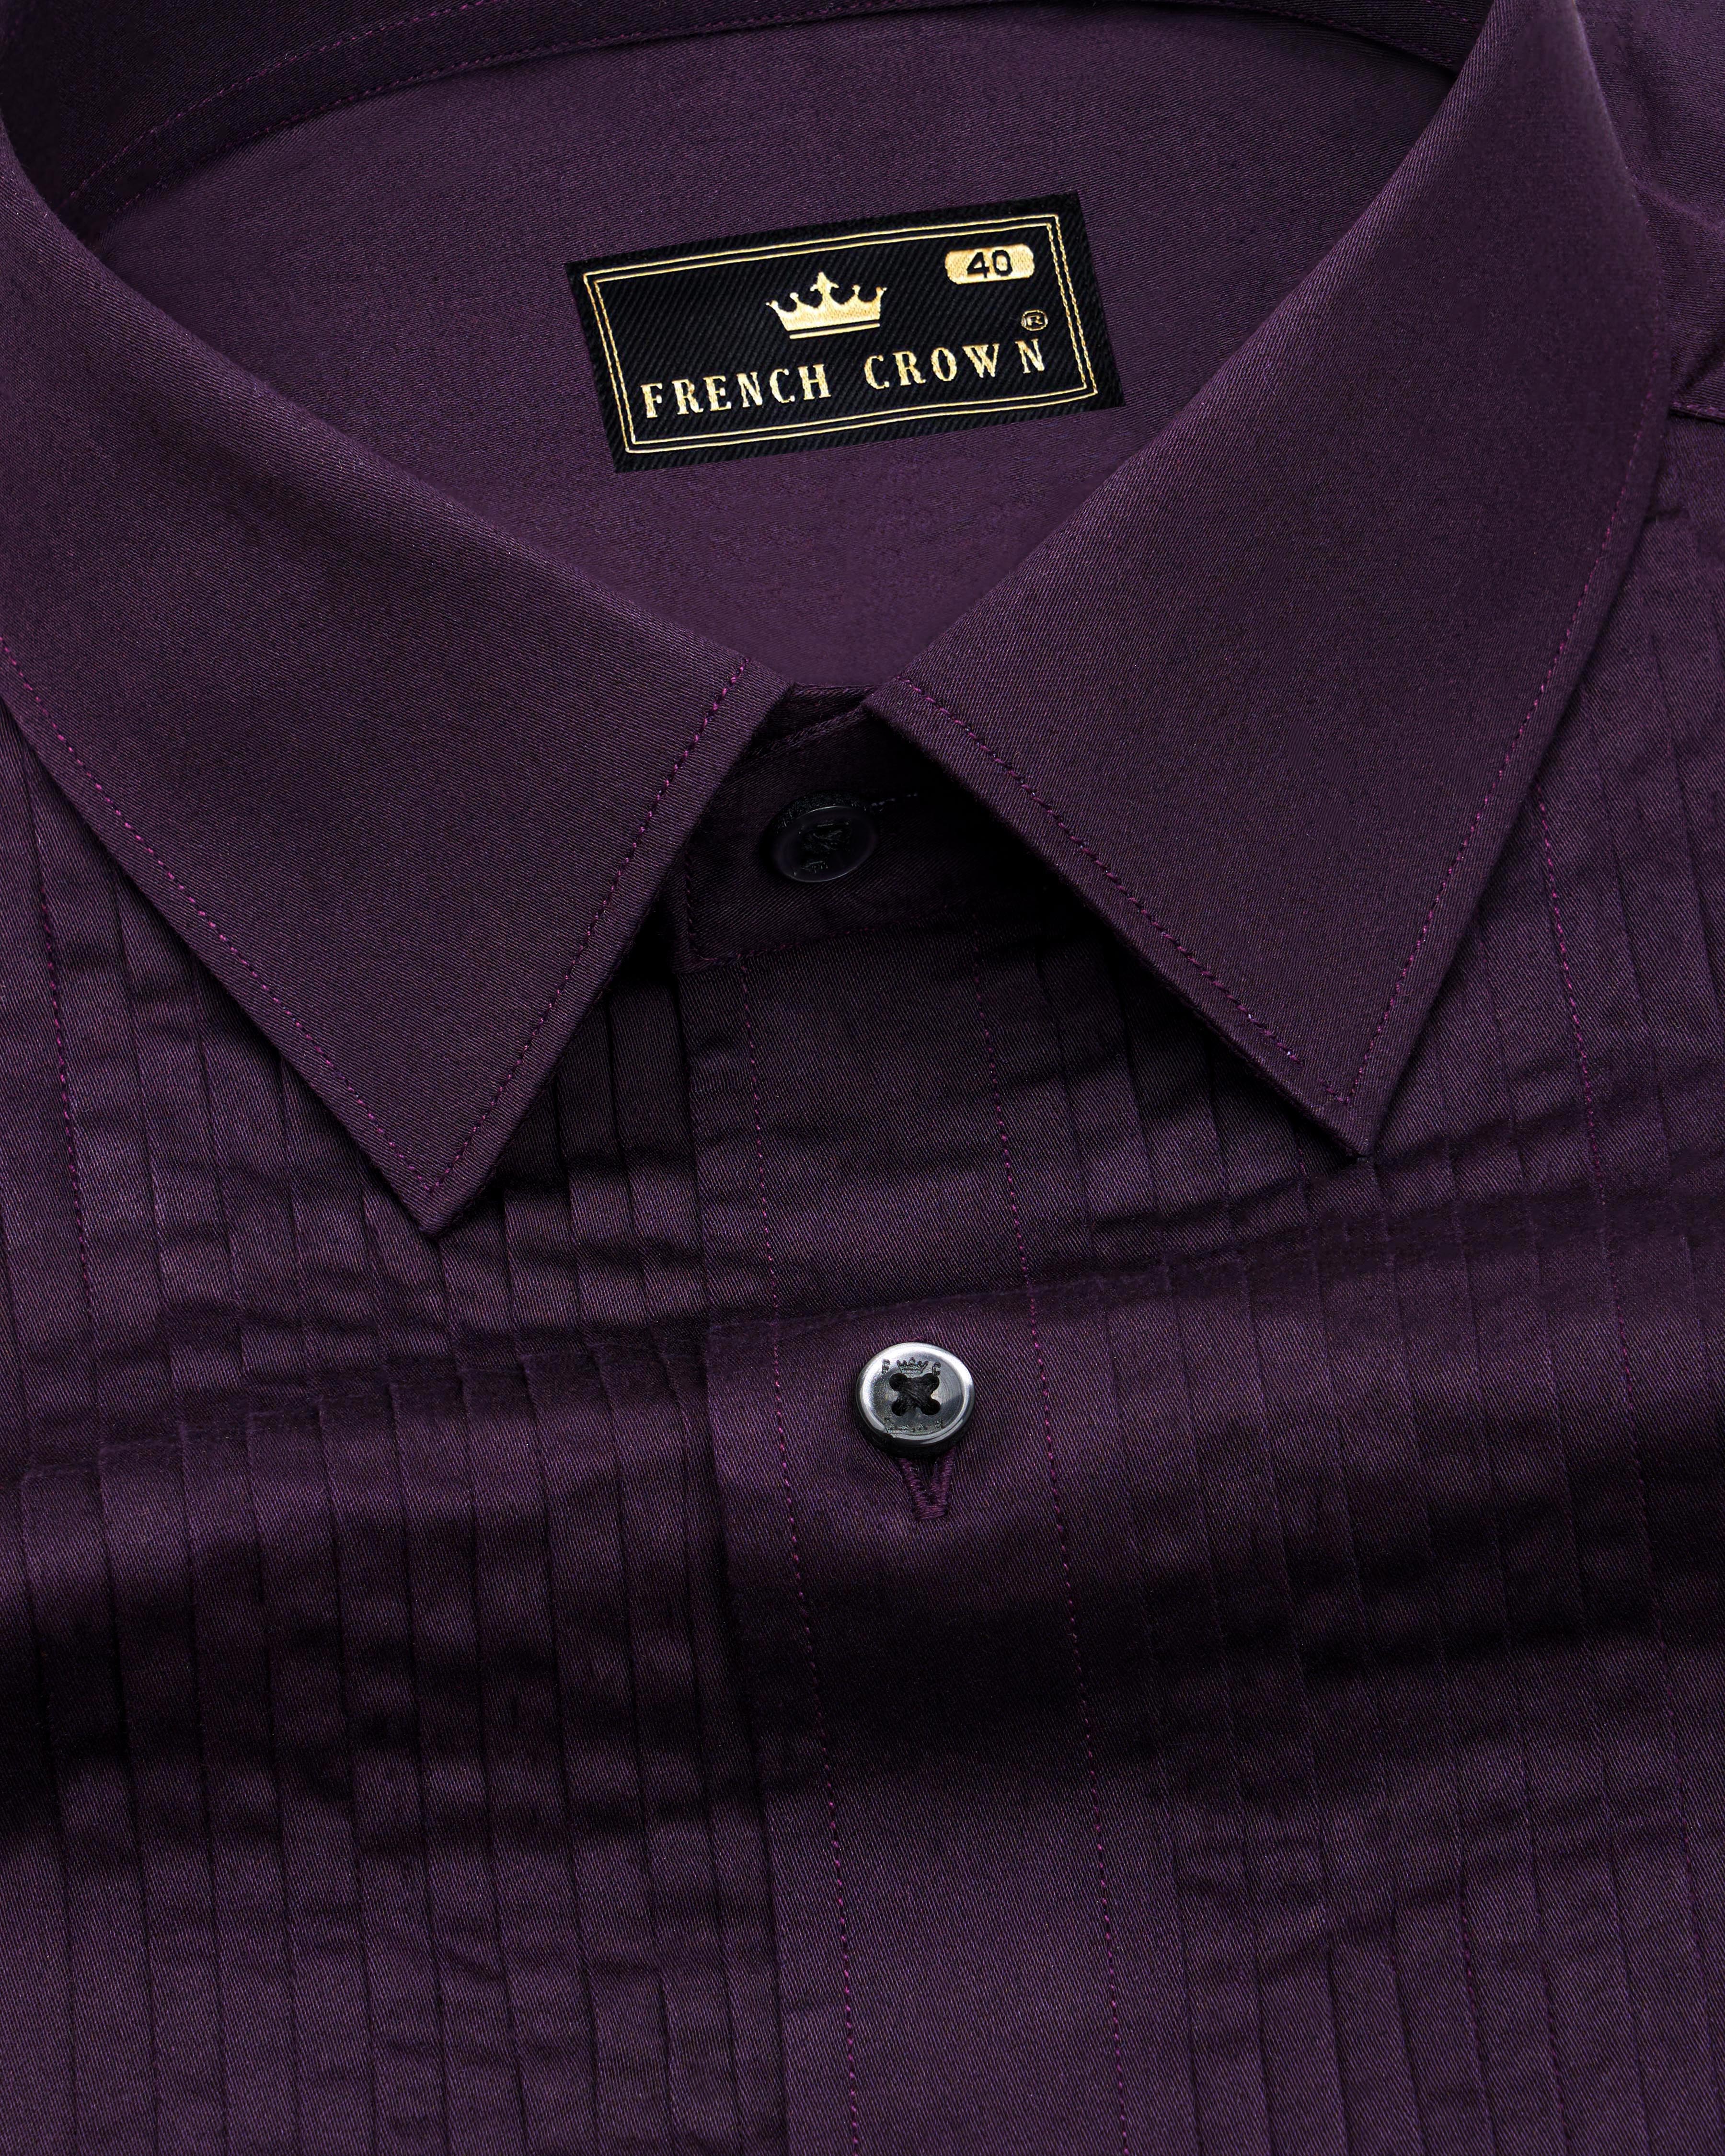 Tolopea Purple Subtle Sheen Snake Pleated Super Soft Premium Cotton Tuxedo Shirt 8690-BLK-TXD-38, 8690-BLK-TXD-H-38, 8690-BLK-TXD-39, 8690-BLK-TXD-H-39, 8690-BLK-TXD-40, 8690-BLK-TXD-H-40, 8690-BLK-TXD-42, 8690-BLK-TXD-H-42, 8690-BLK-TXD-44, 8690-BLK-TXD-H-44, 8690-BLK-TXD-46, 8690-BLK-TXD-H-46, 8690-BLK-TXD-48, 8690-BLK-TXD-H-48, 8690-BLK-TXD-50, 8690-BLK-TXD-H-50, 8690-BLK-TXD-52, 8690-BLK-TXD-H-52